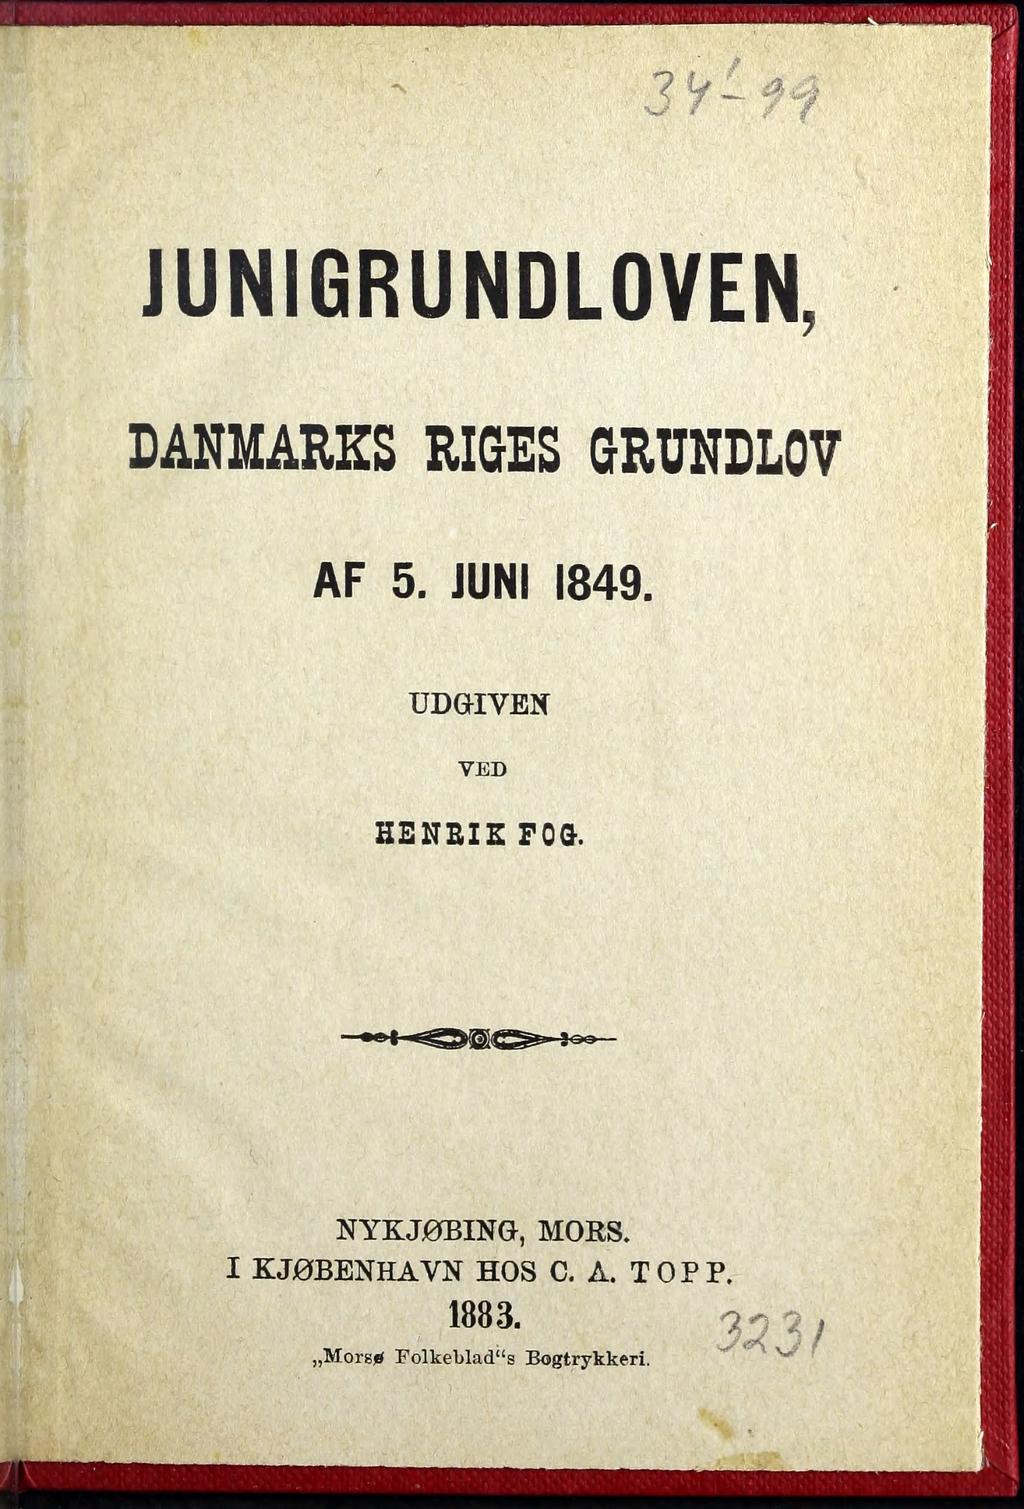 3 l f ~~ JUNIGRUNDLOVEN, DANMARKS RIGES GRUNDLOV AF 5. JUNI 1849.